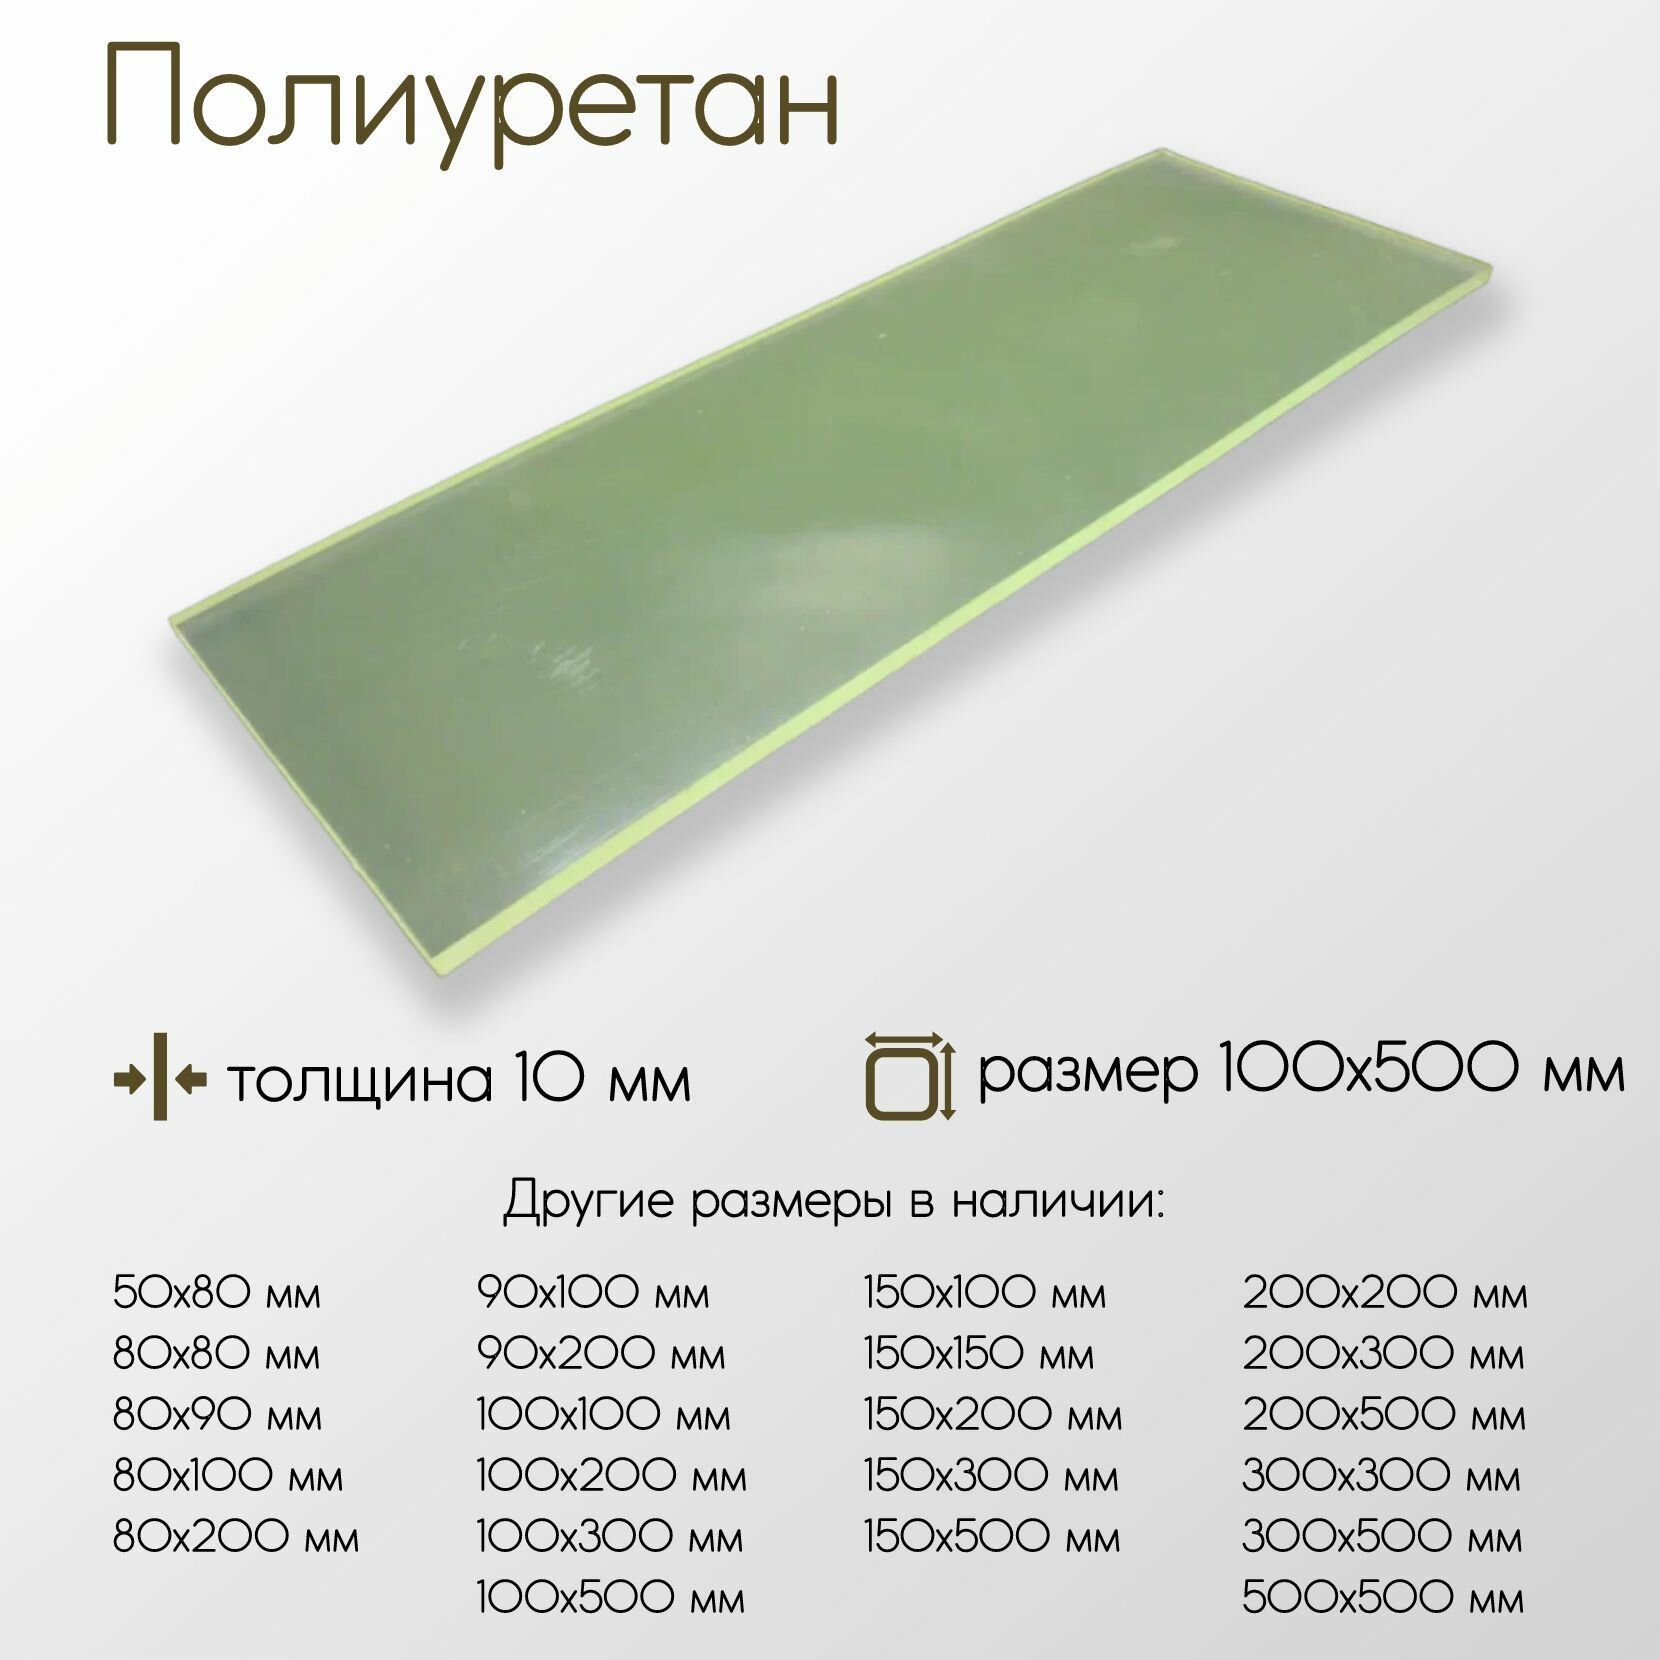 Полиуретан лист ПУ толщина 10 мм 10х100x500 мм